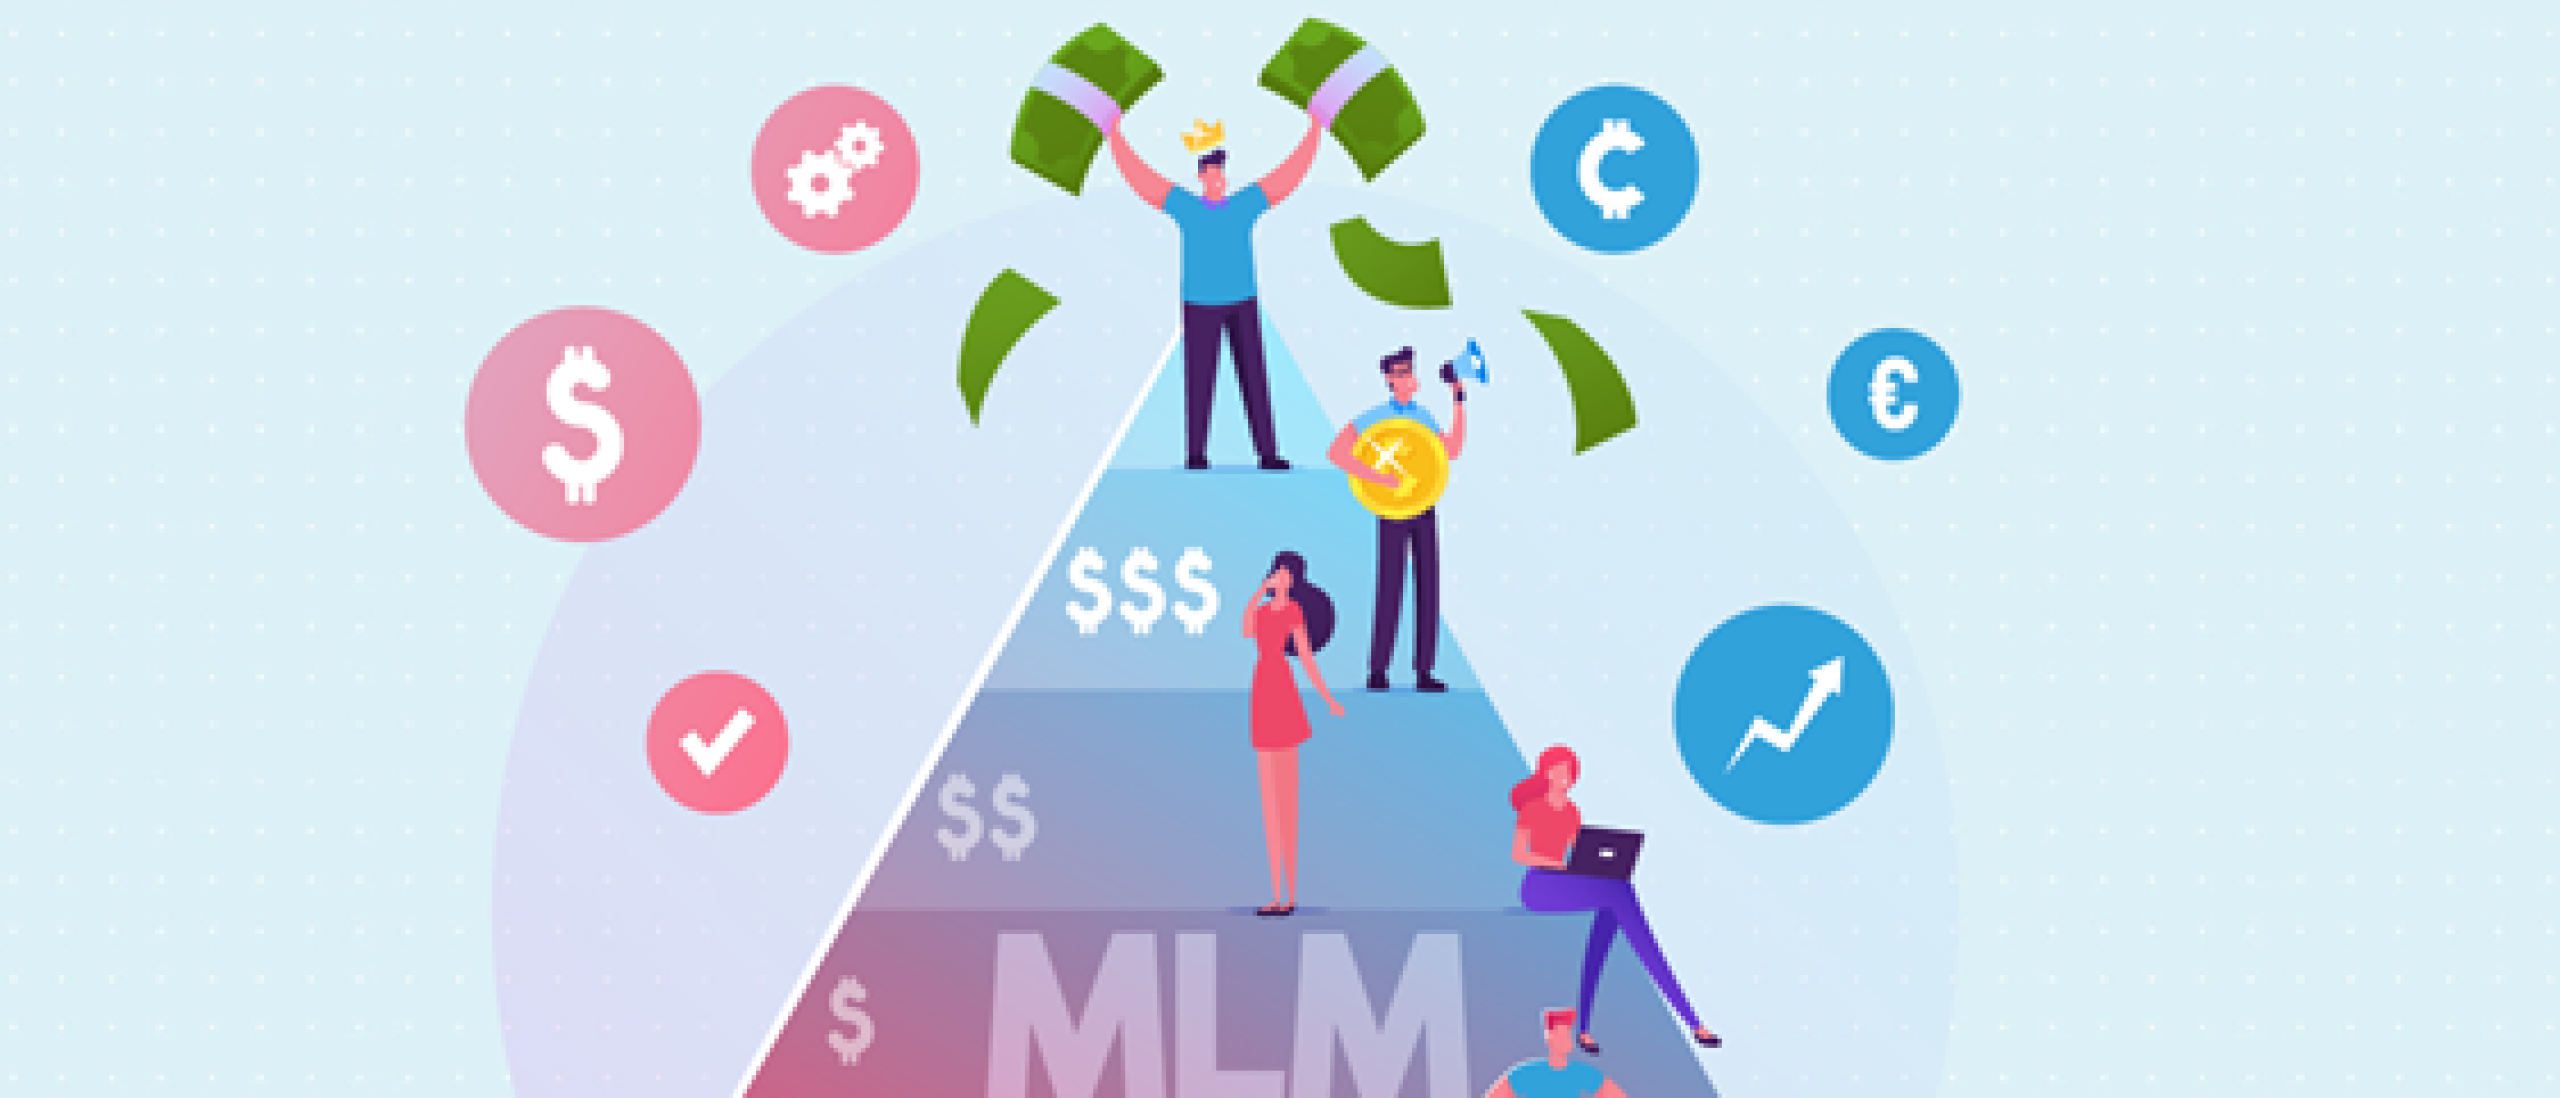 7 leerzame tips voor een succesvolle start met MLM (network marketing)